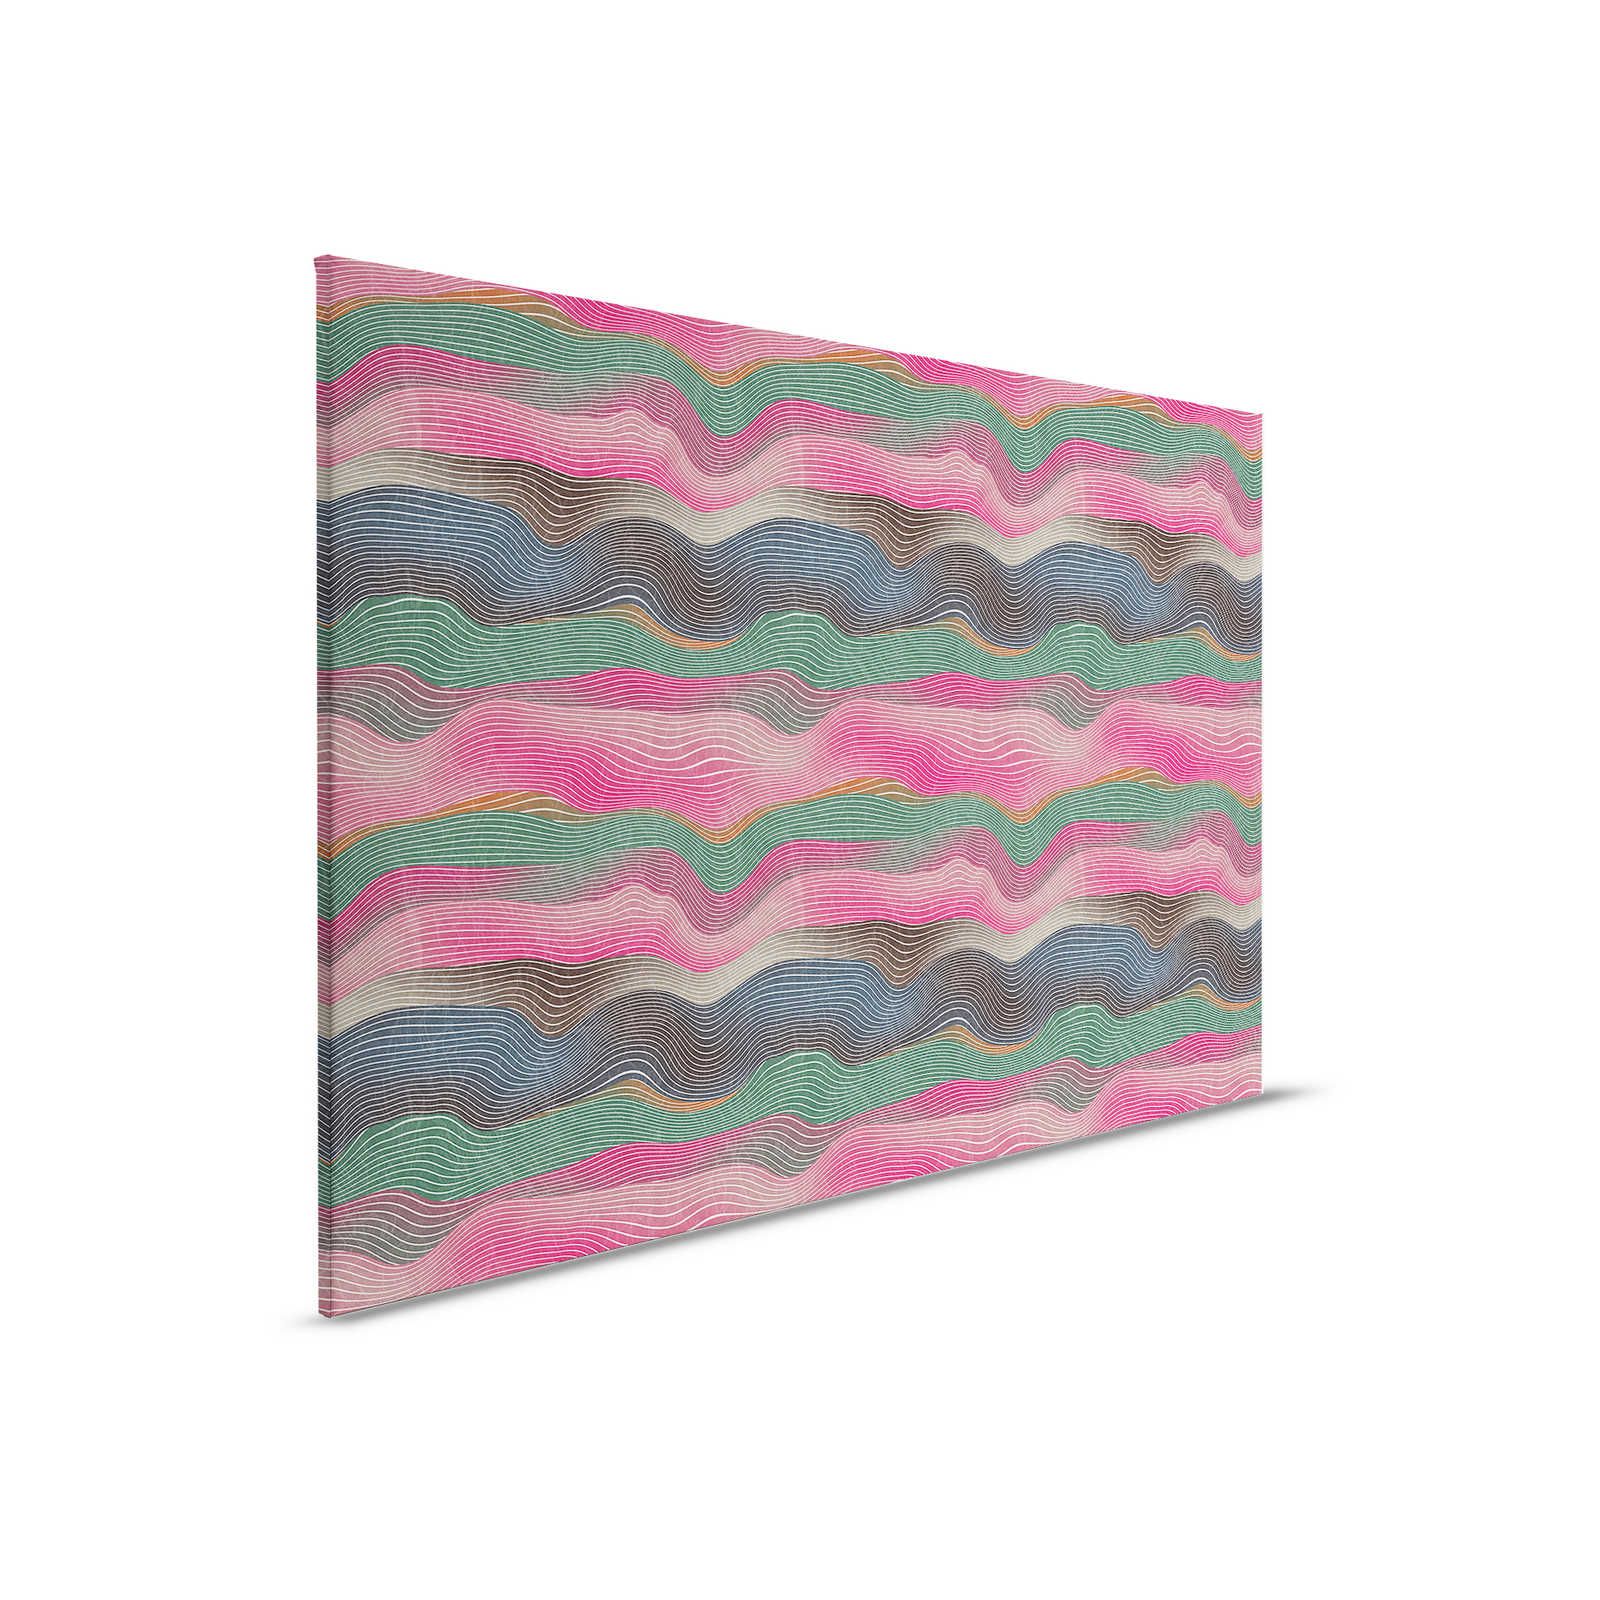         Space 1 - Leinwandbild Wellen Muster Pink & Grün im Retro Stil – 0,90 m x 0,60 m
    